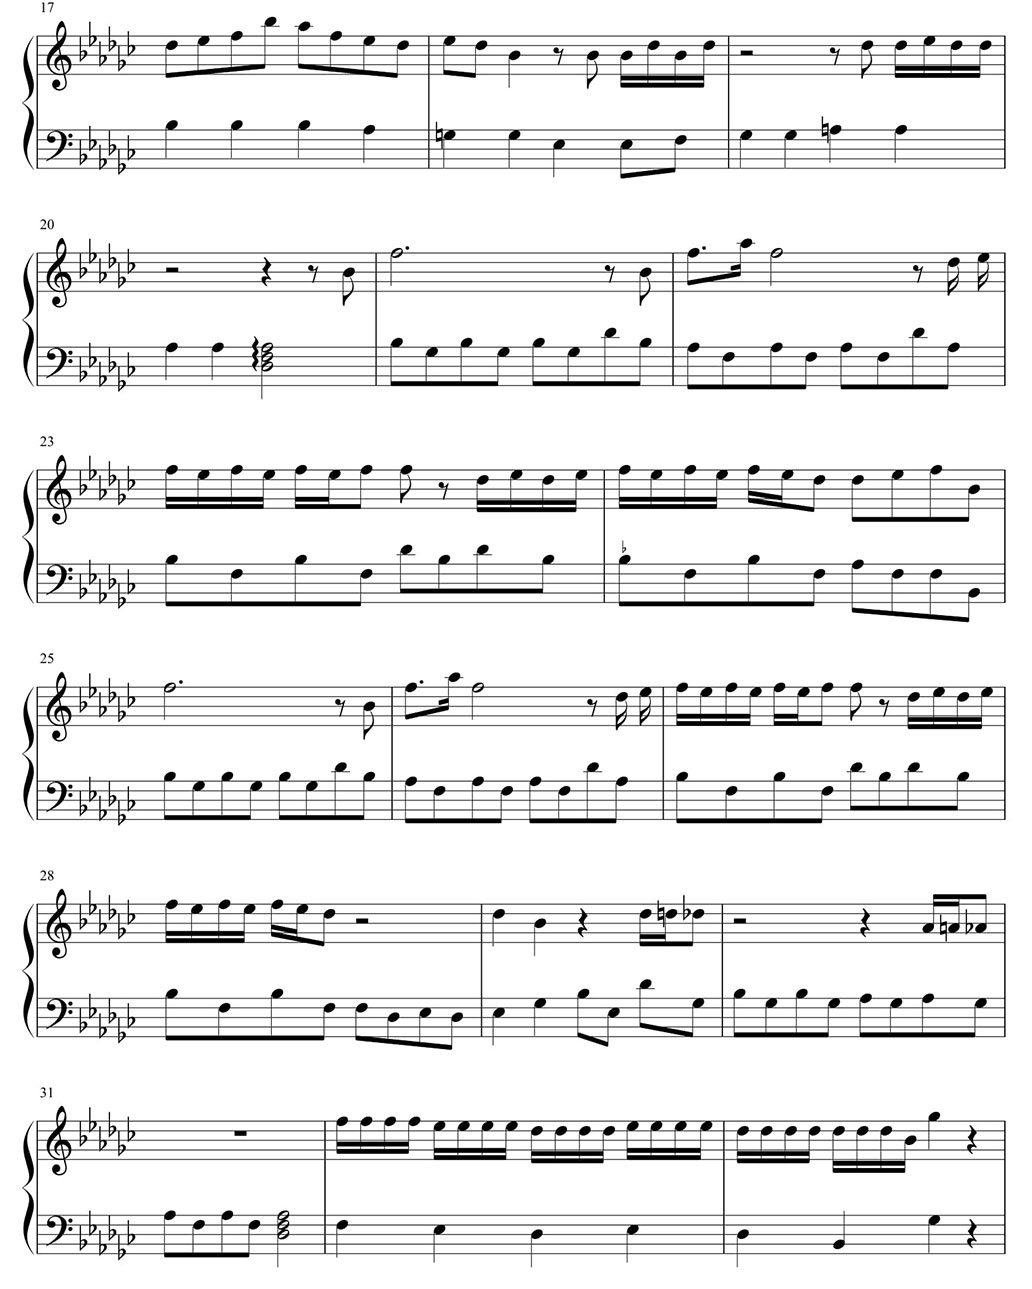 if you piano sheet music notes